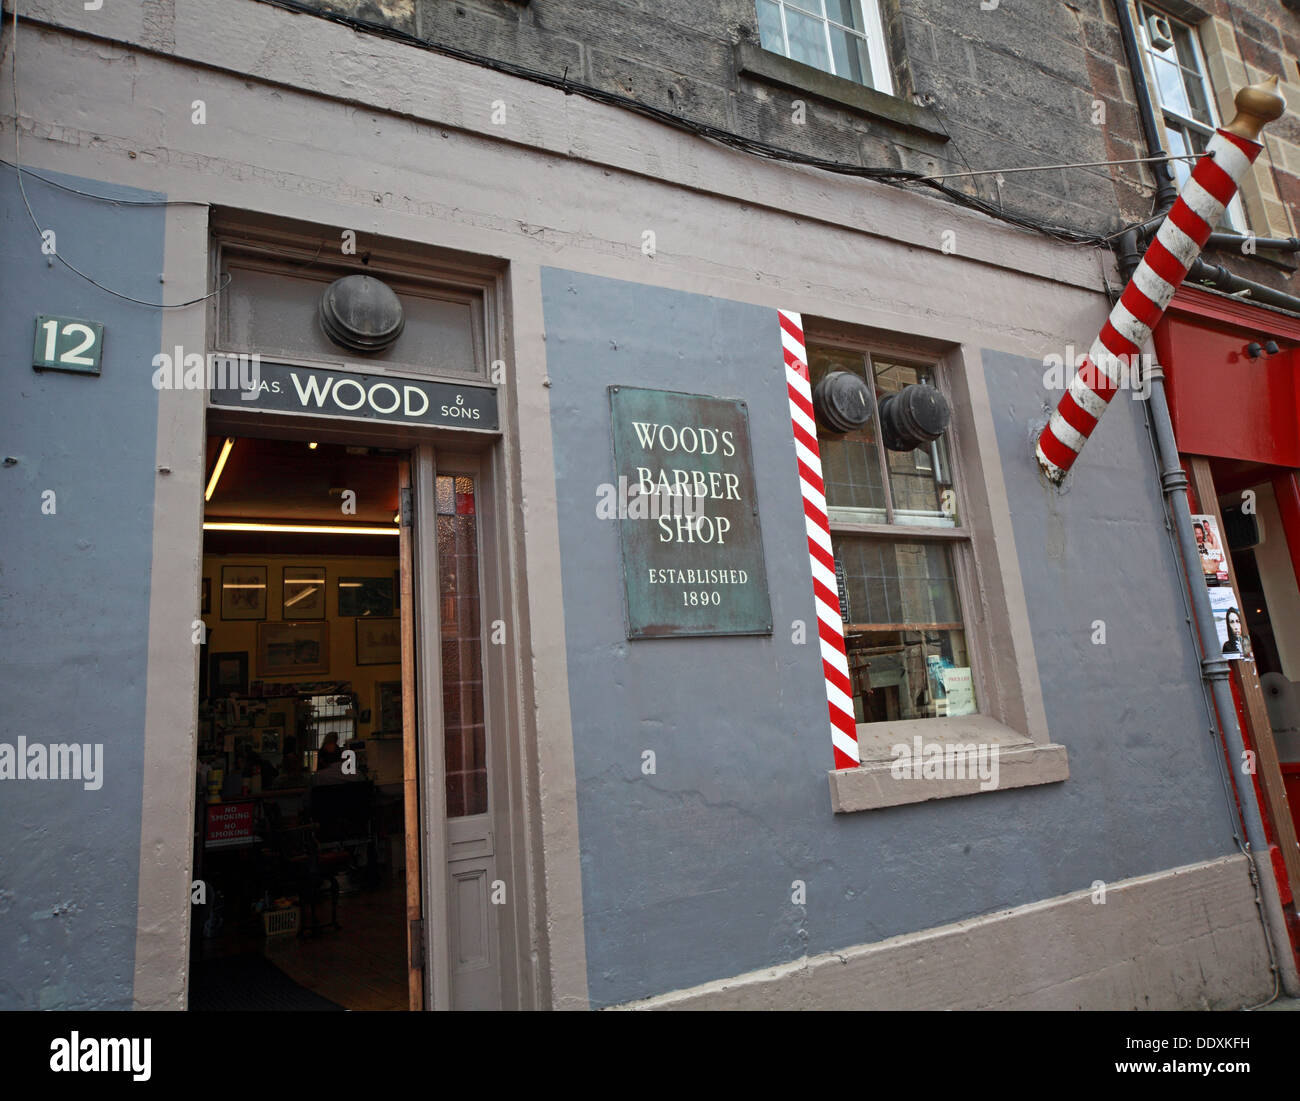 Barbers traditionnels établis en 1890, Woods Barber Shop, 12 Drummond St, Édimbourg EH8 9TU Banque D'Images